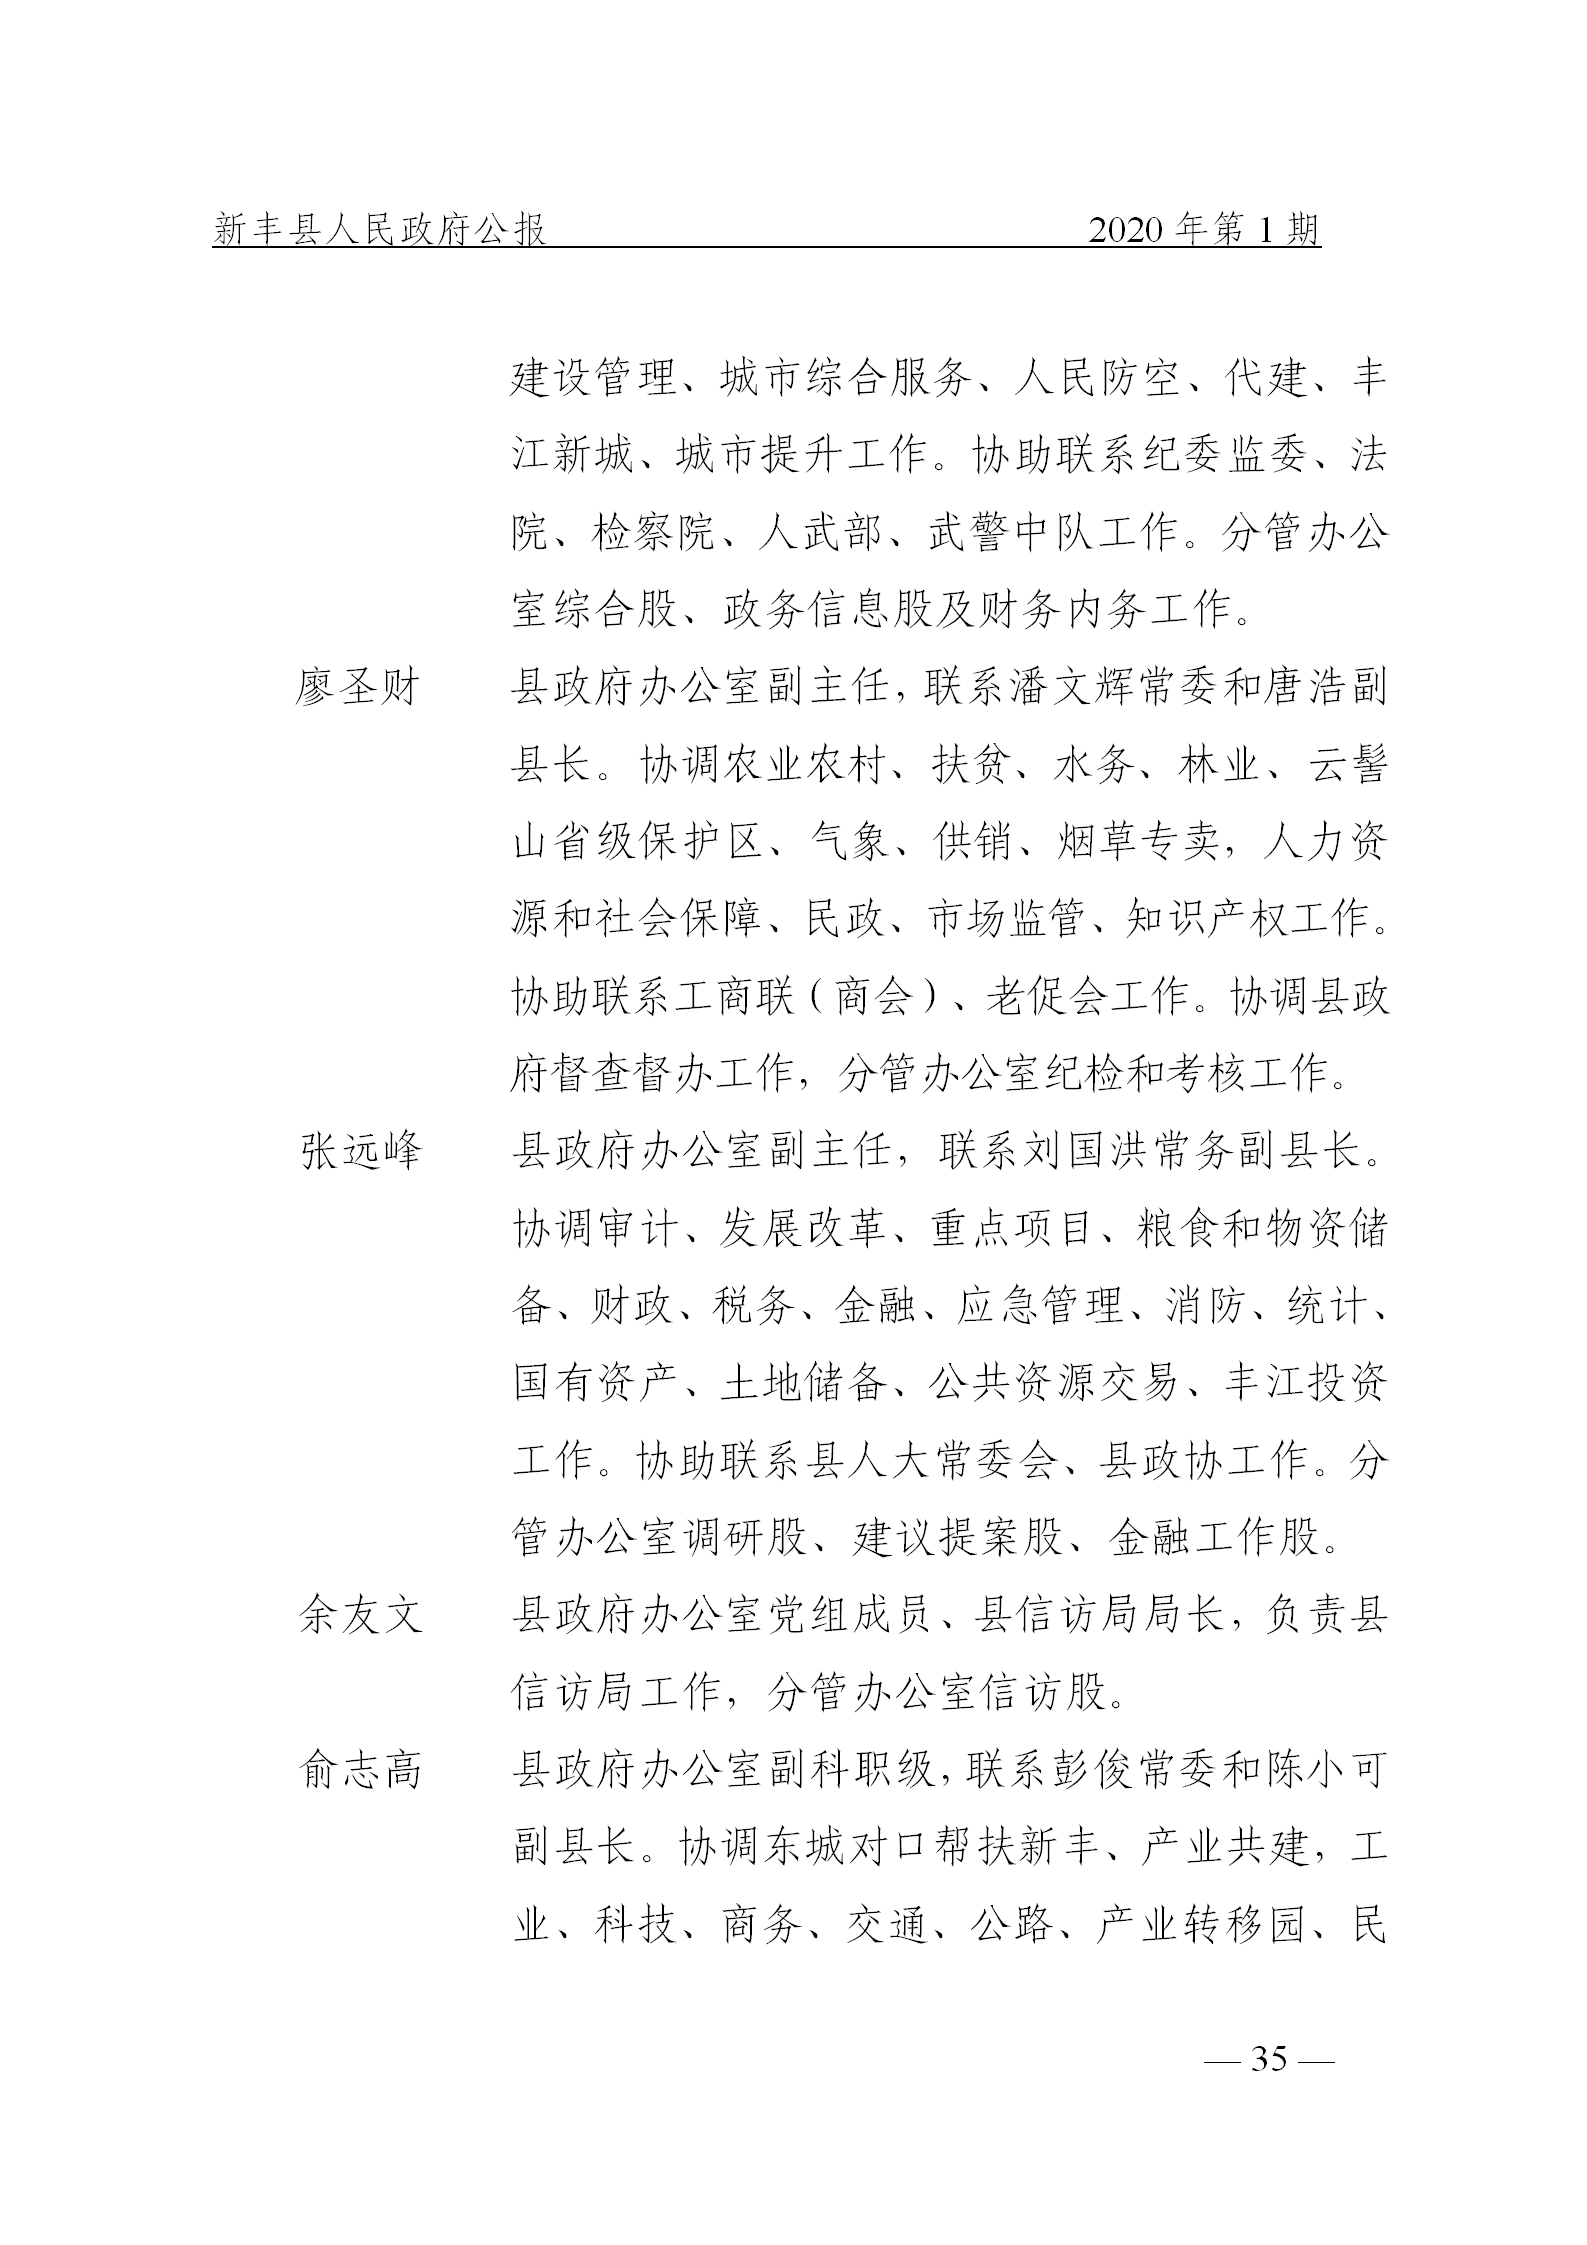 《新丰县人民政府公报》2020年第1期(1)_35.png